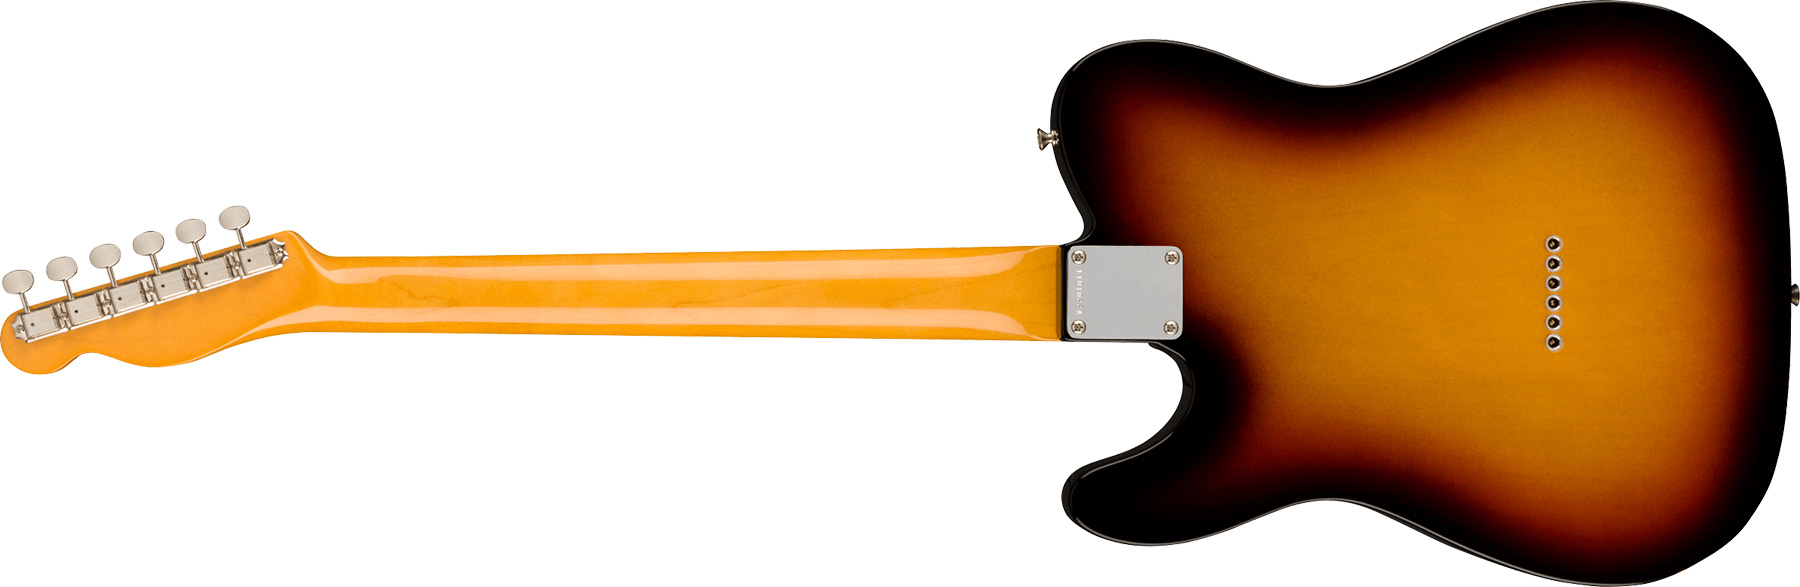 Fender Tele 1963 American Vintage Ii Usa 2s Ht Rw - 3-color Sunburst - Guitarra eléctrica con forma de tel - Variation 1